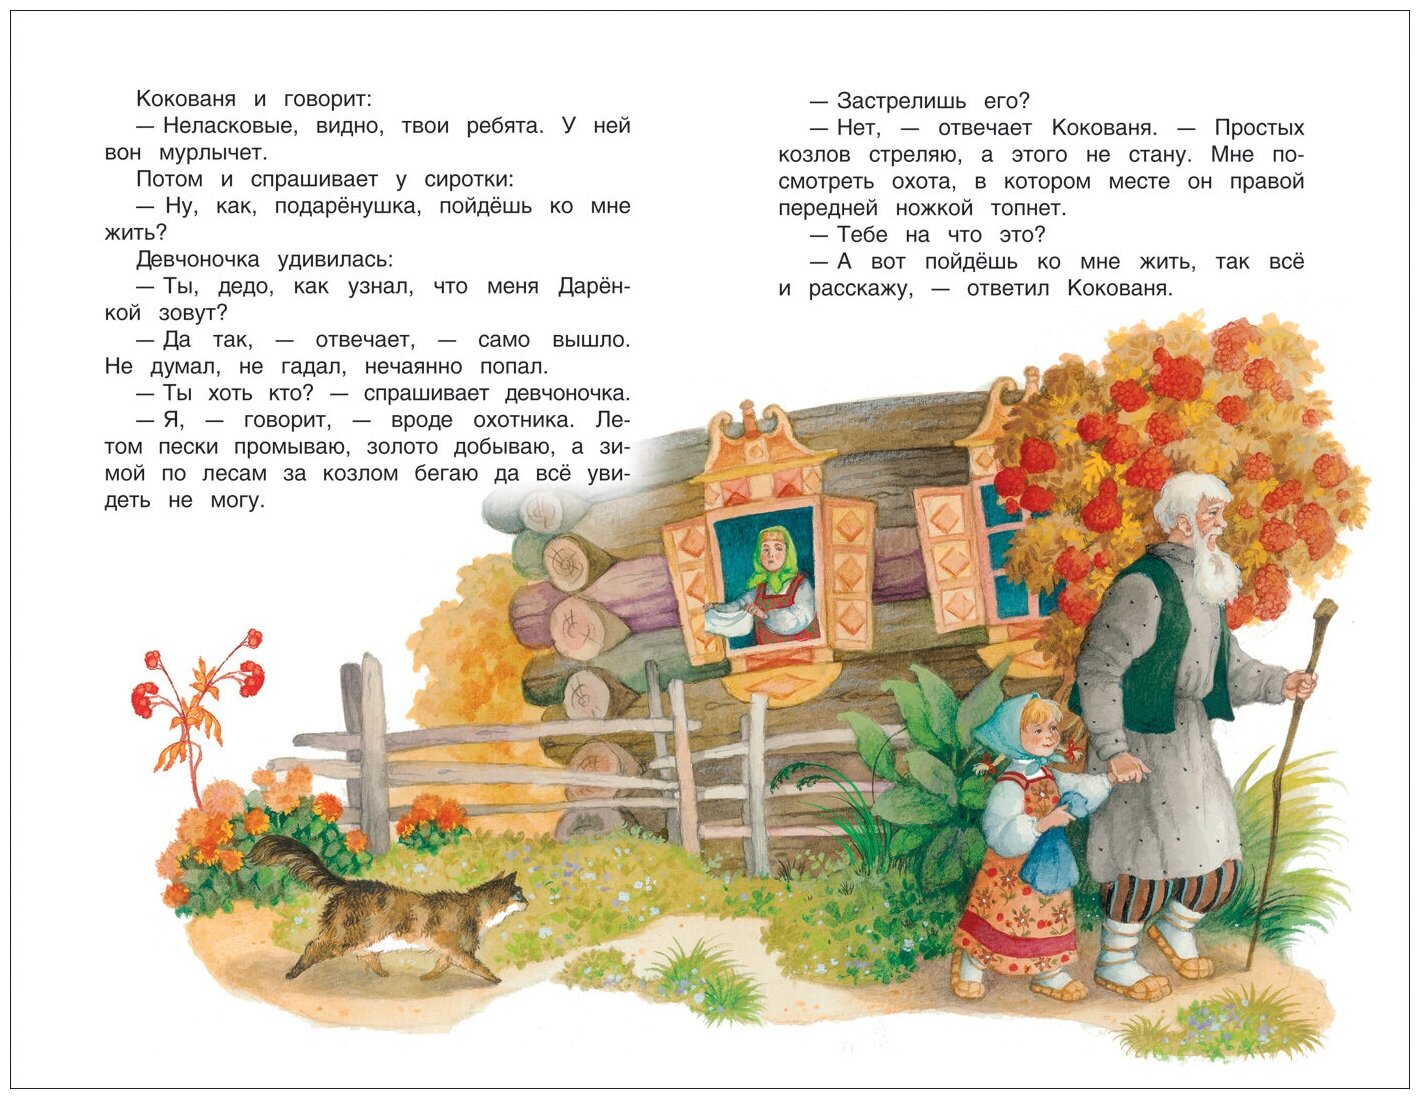 Уральские сказы (Бажов Павел Петрович) - фото №3